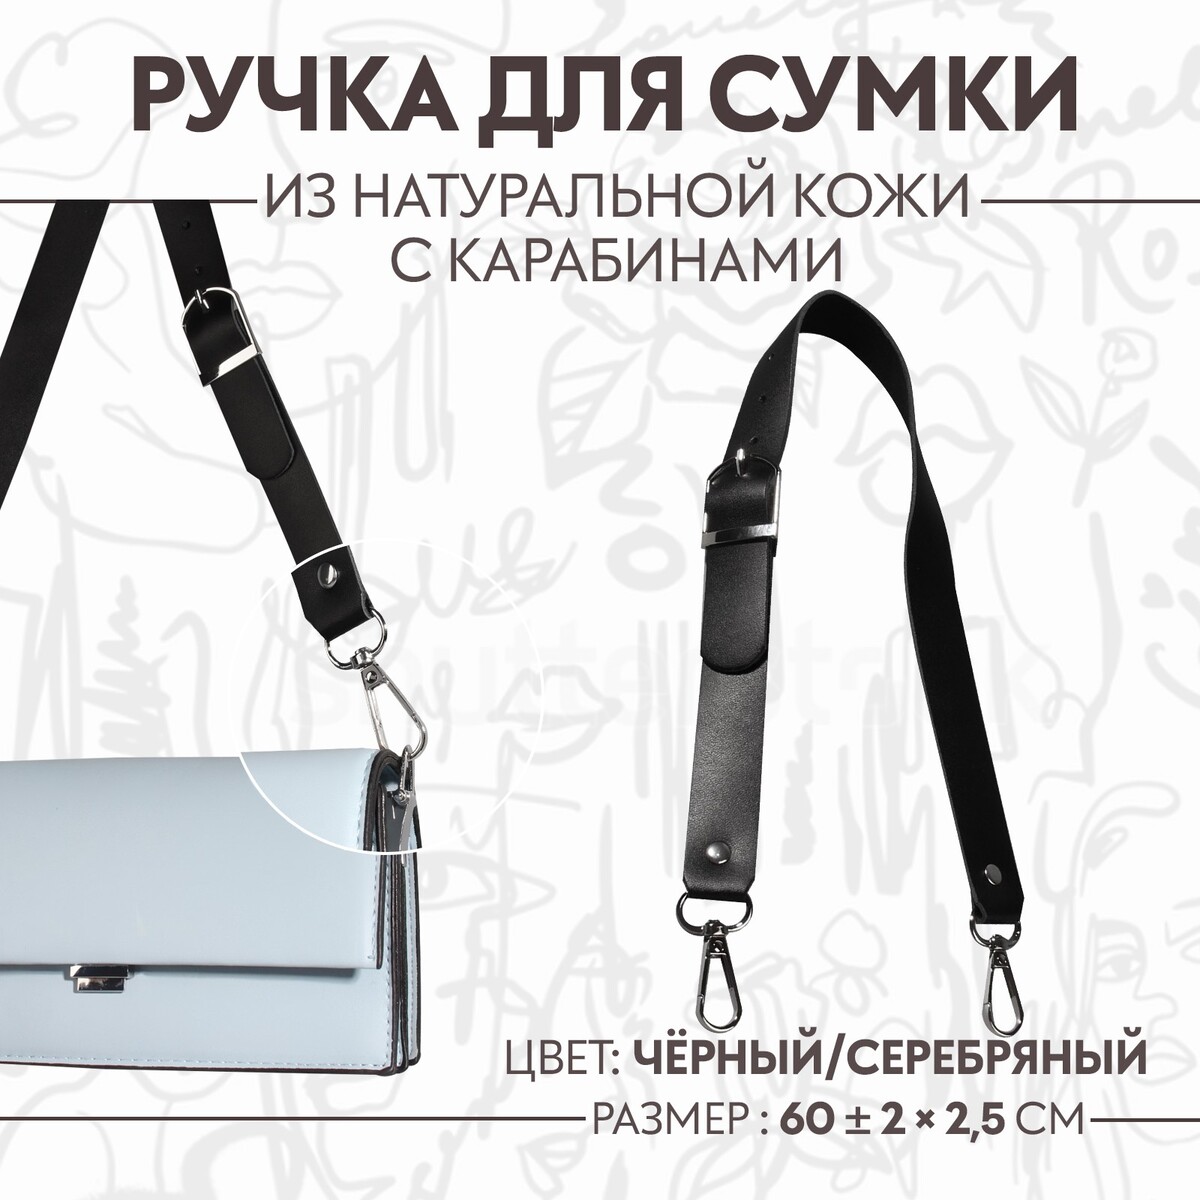 Ручка для сумки из натуральной кожи, регулируемая, с карабинами, 60 ± 2 см × 2,5 см, цвет черный/серебряный